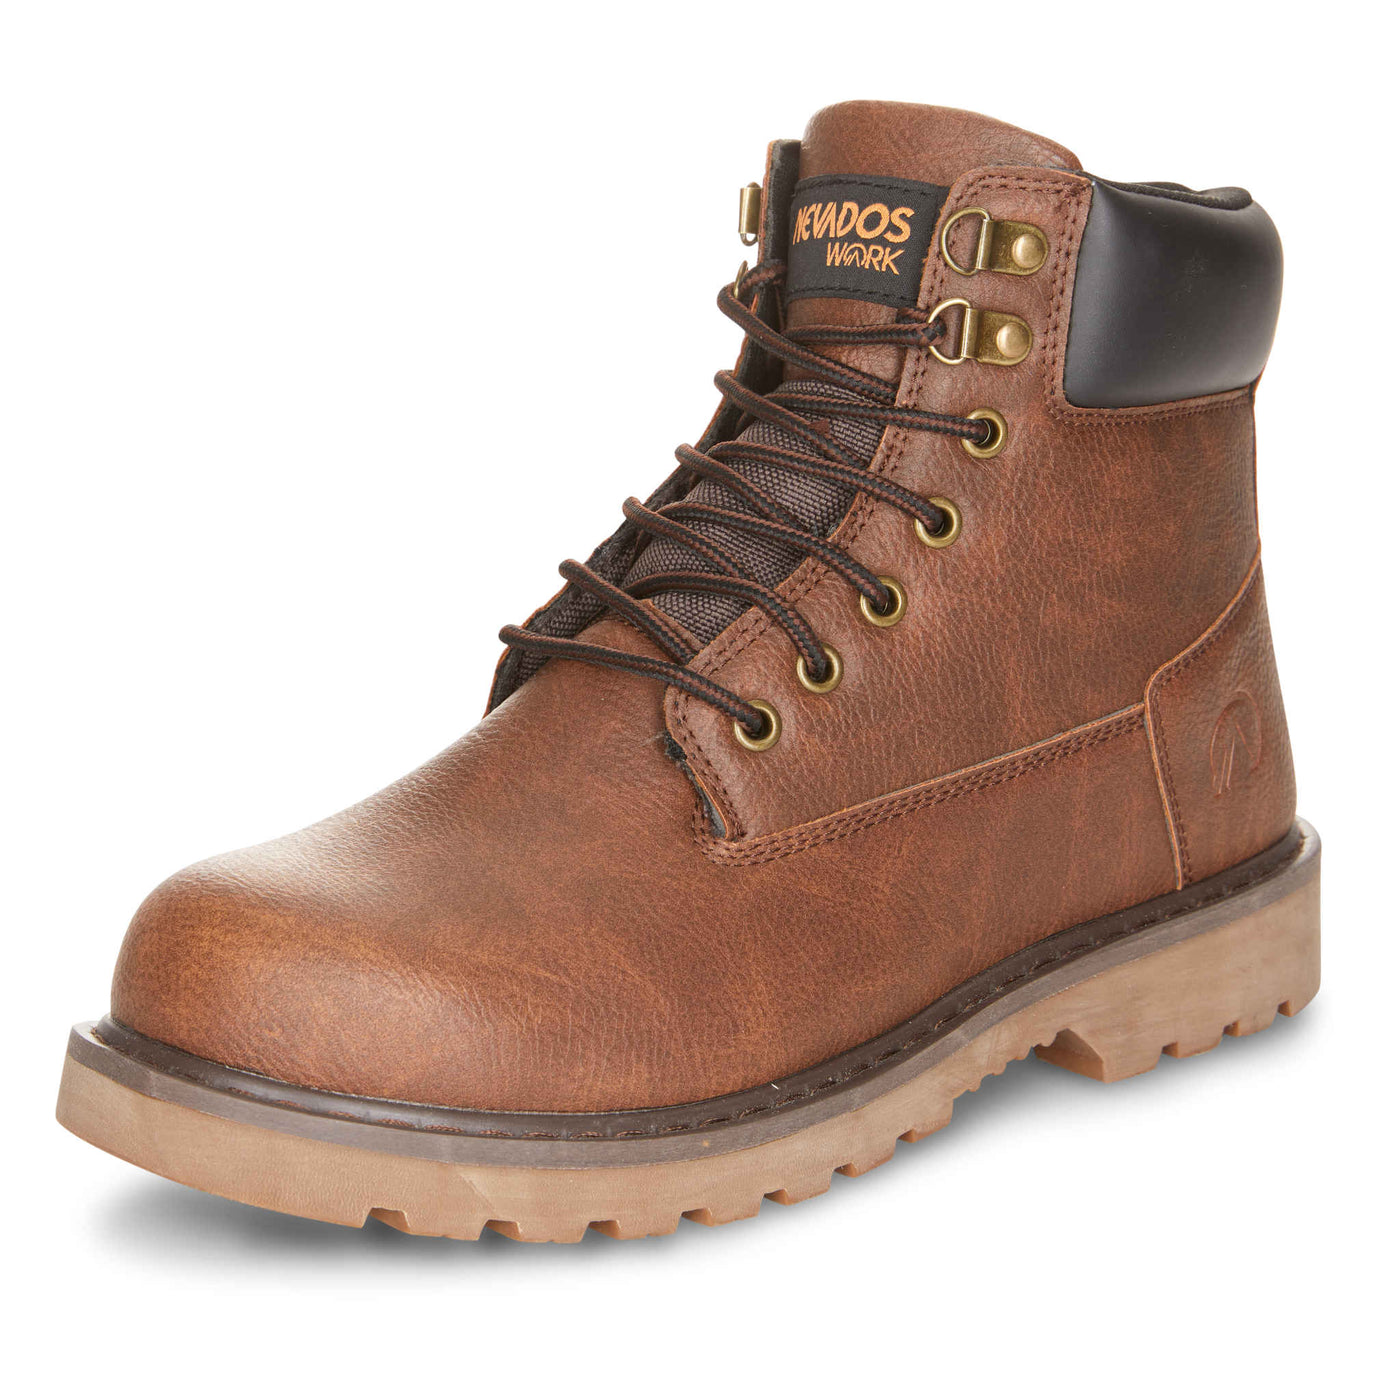 Nevados Men's Work Boots Fieldzone Brown